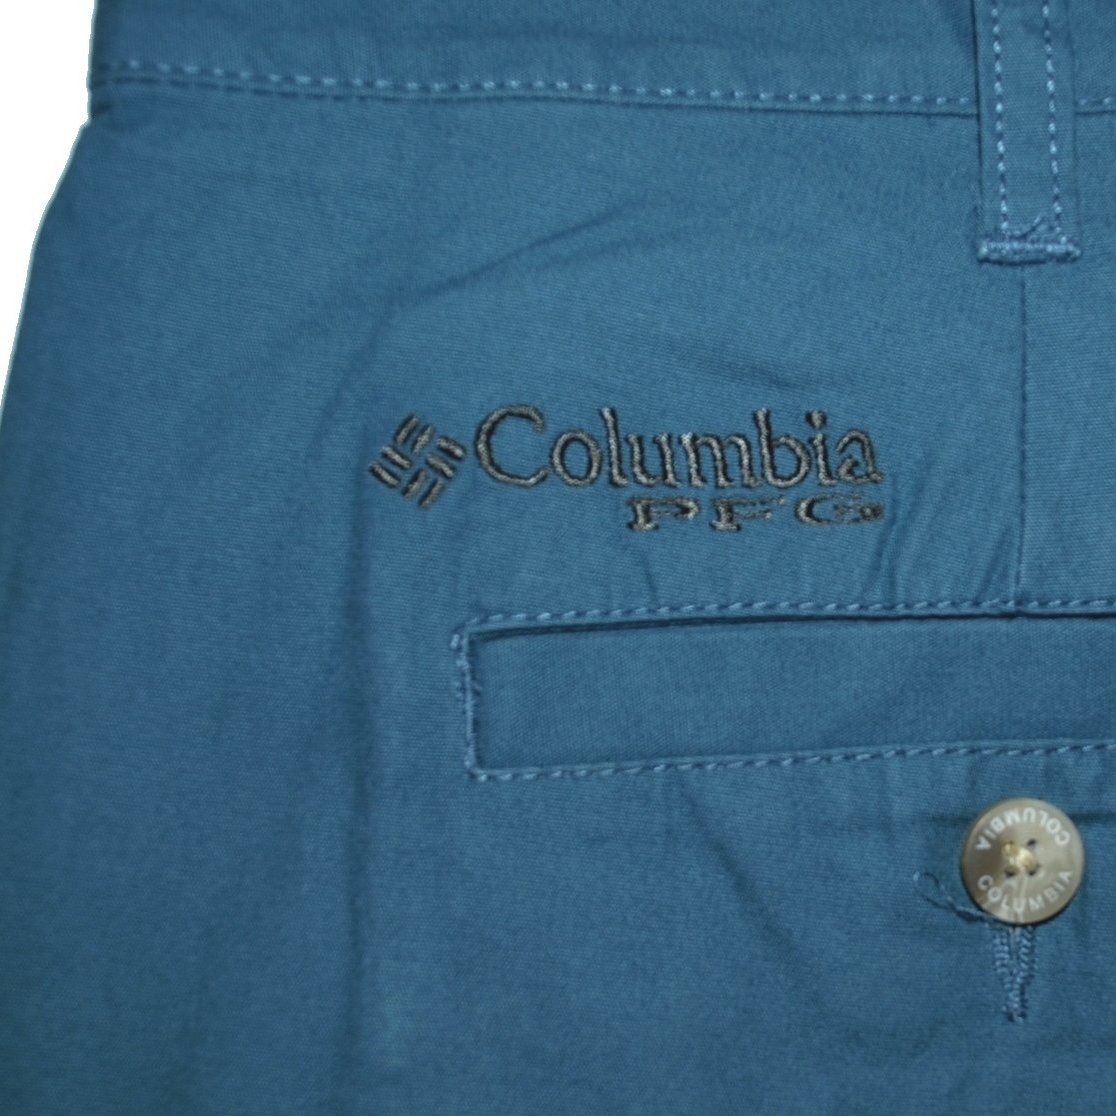 Columbia PFG Backcast 夏天機能長褲機能短褲長短兩用36腰~39腰大尺碼全新現貨